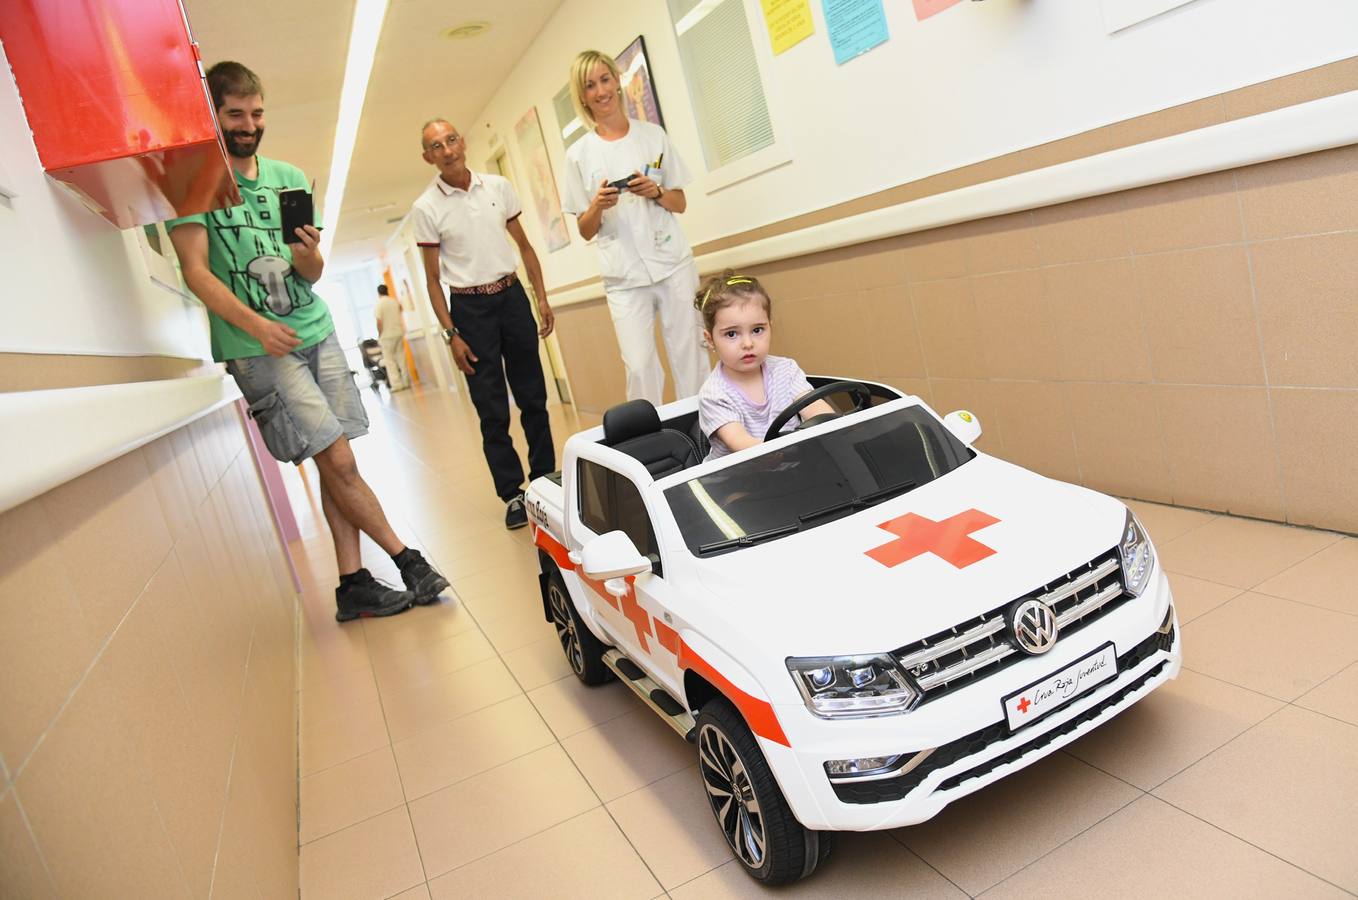 Cruz Roja Española y Cajaviva Caja Rural entregan un vehículo eléctrico infantil al Hospital Santos Reyes de Aranda de Duero (Burgos).